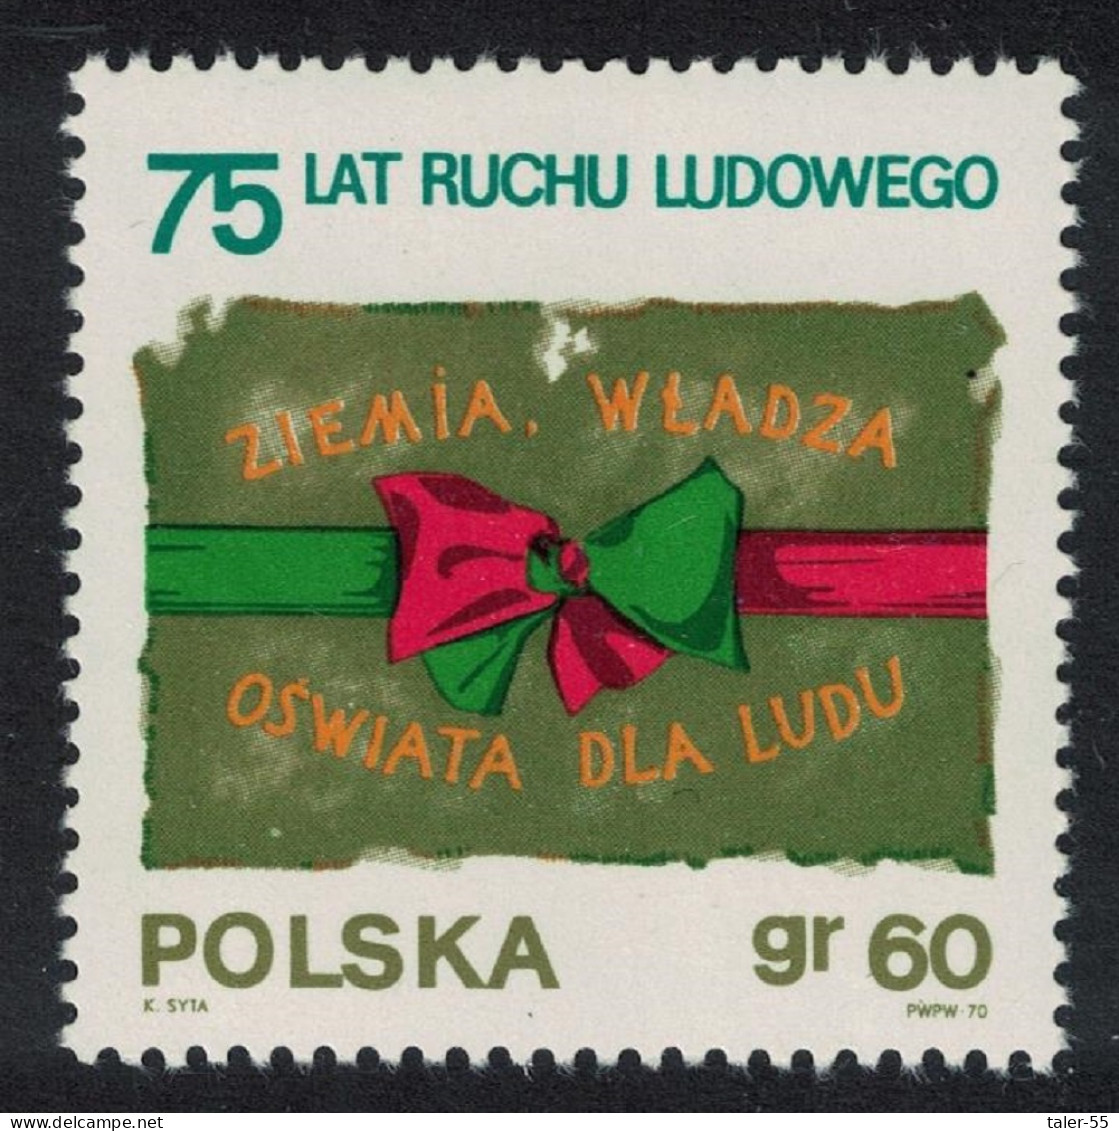 Poland 75th Anniversary Of Peasant Movement 1970 MNH SG#1987 - Ongebruikt